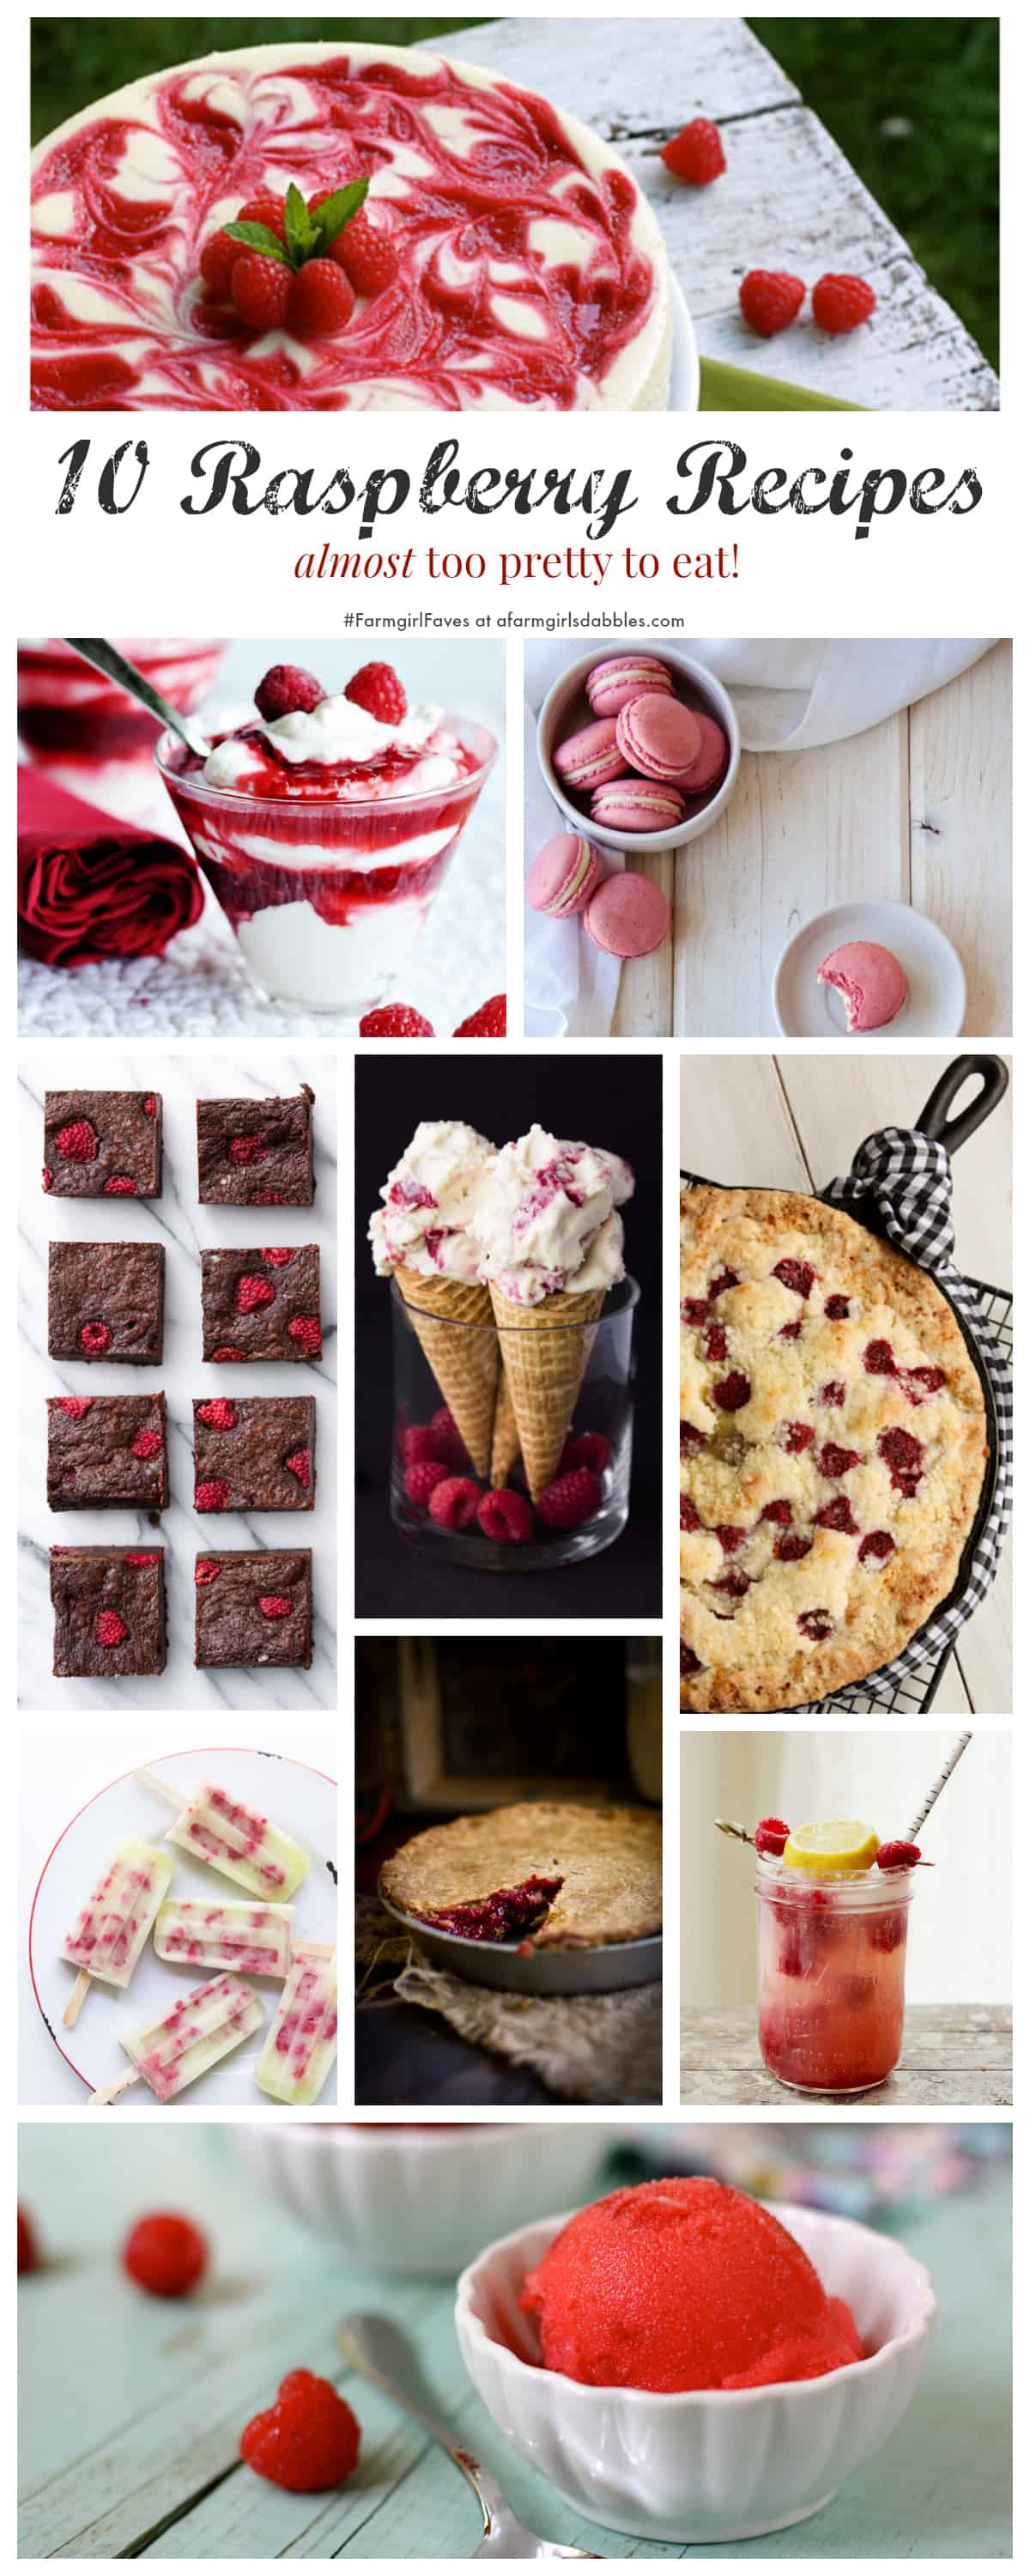 10 Raspberry Recipes | Easy & Delicious Raspberry Desserts